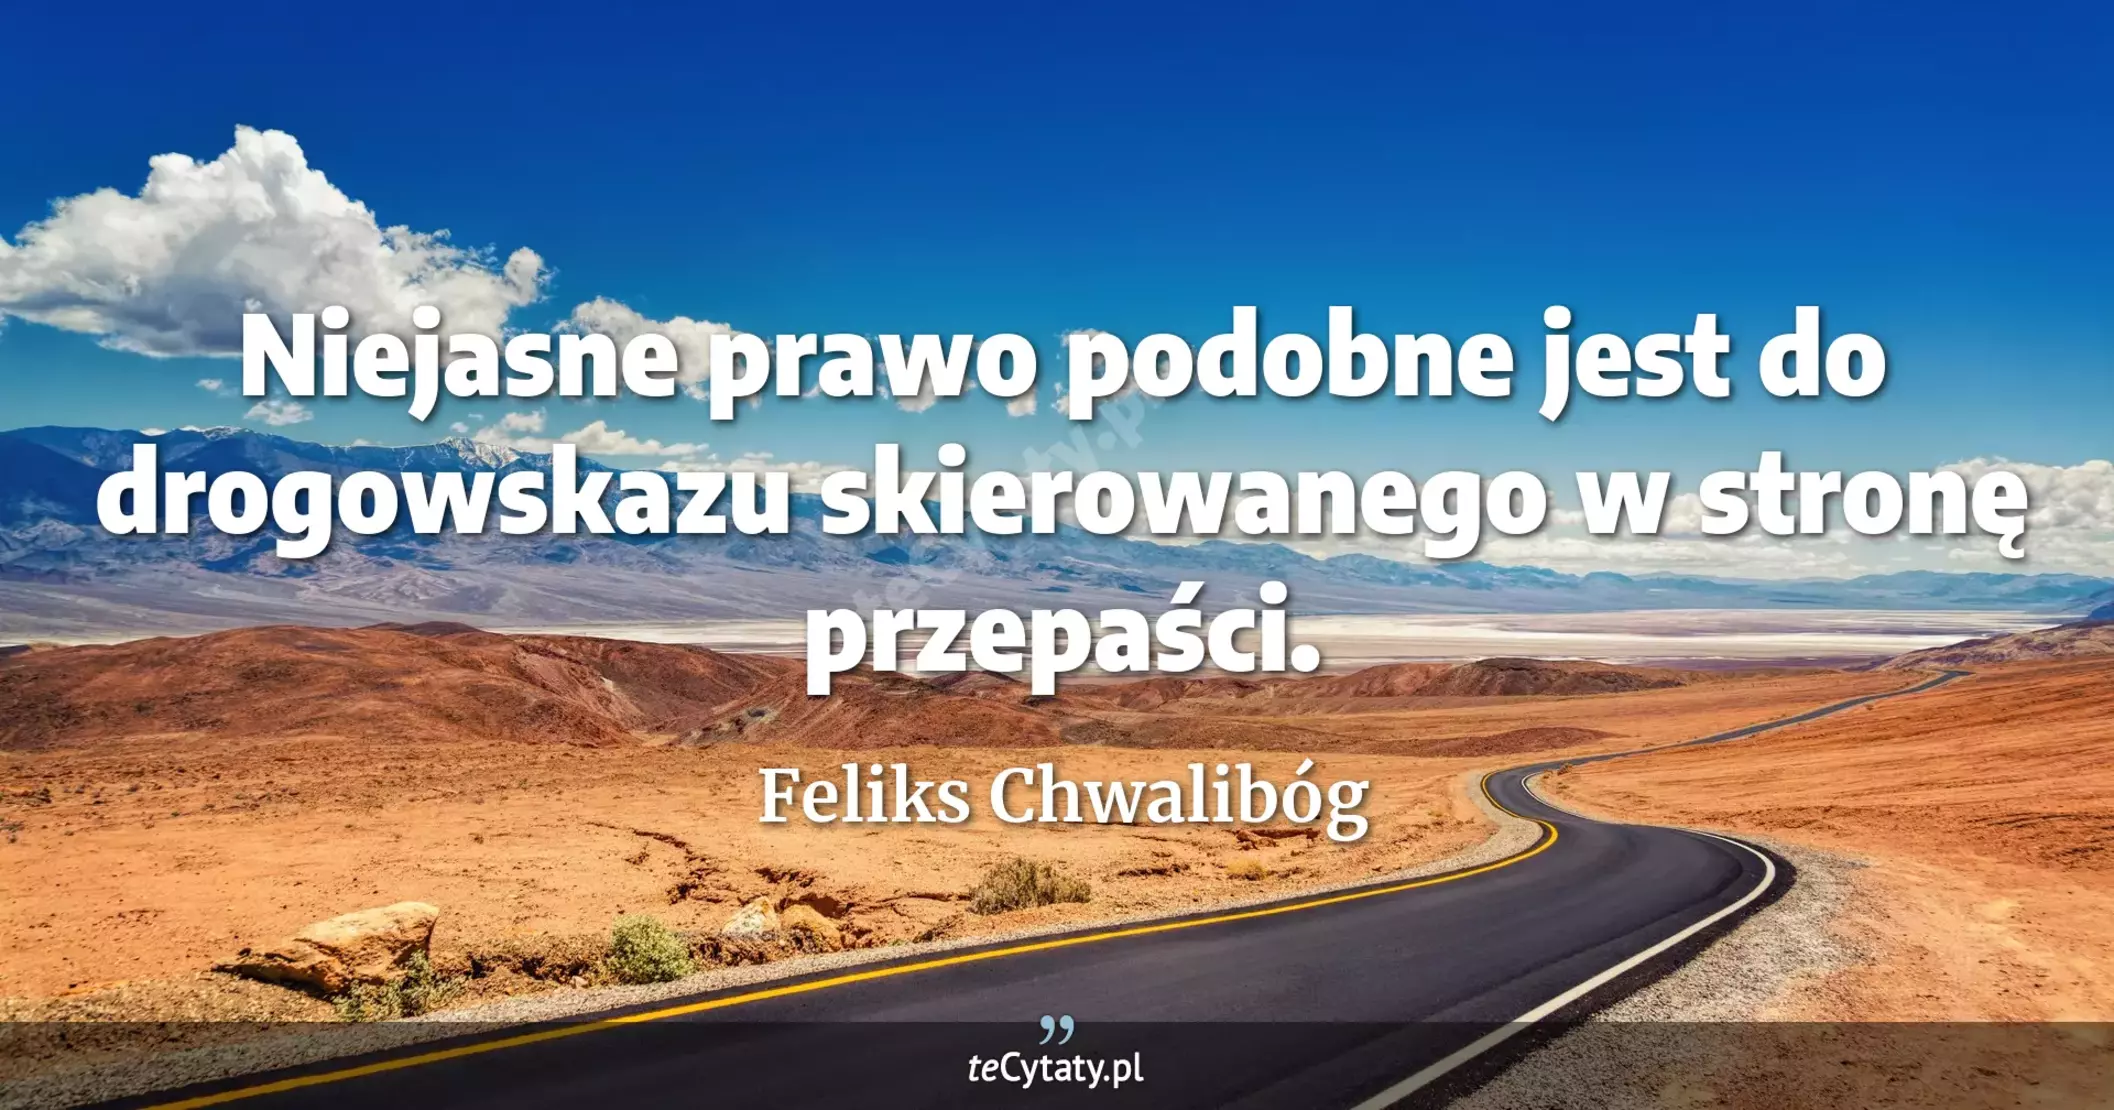 Niejasne prawo podobne jest do drogowskazu skierowanego w stronę przepaści. - Feliks Chwalibóg